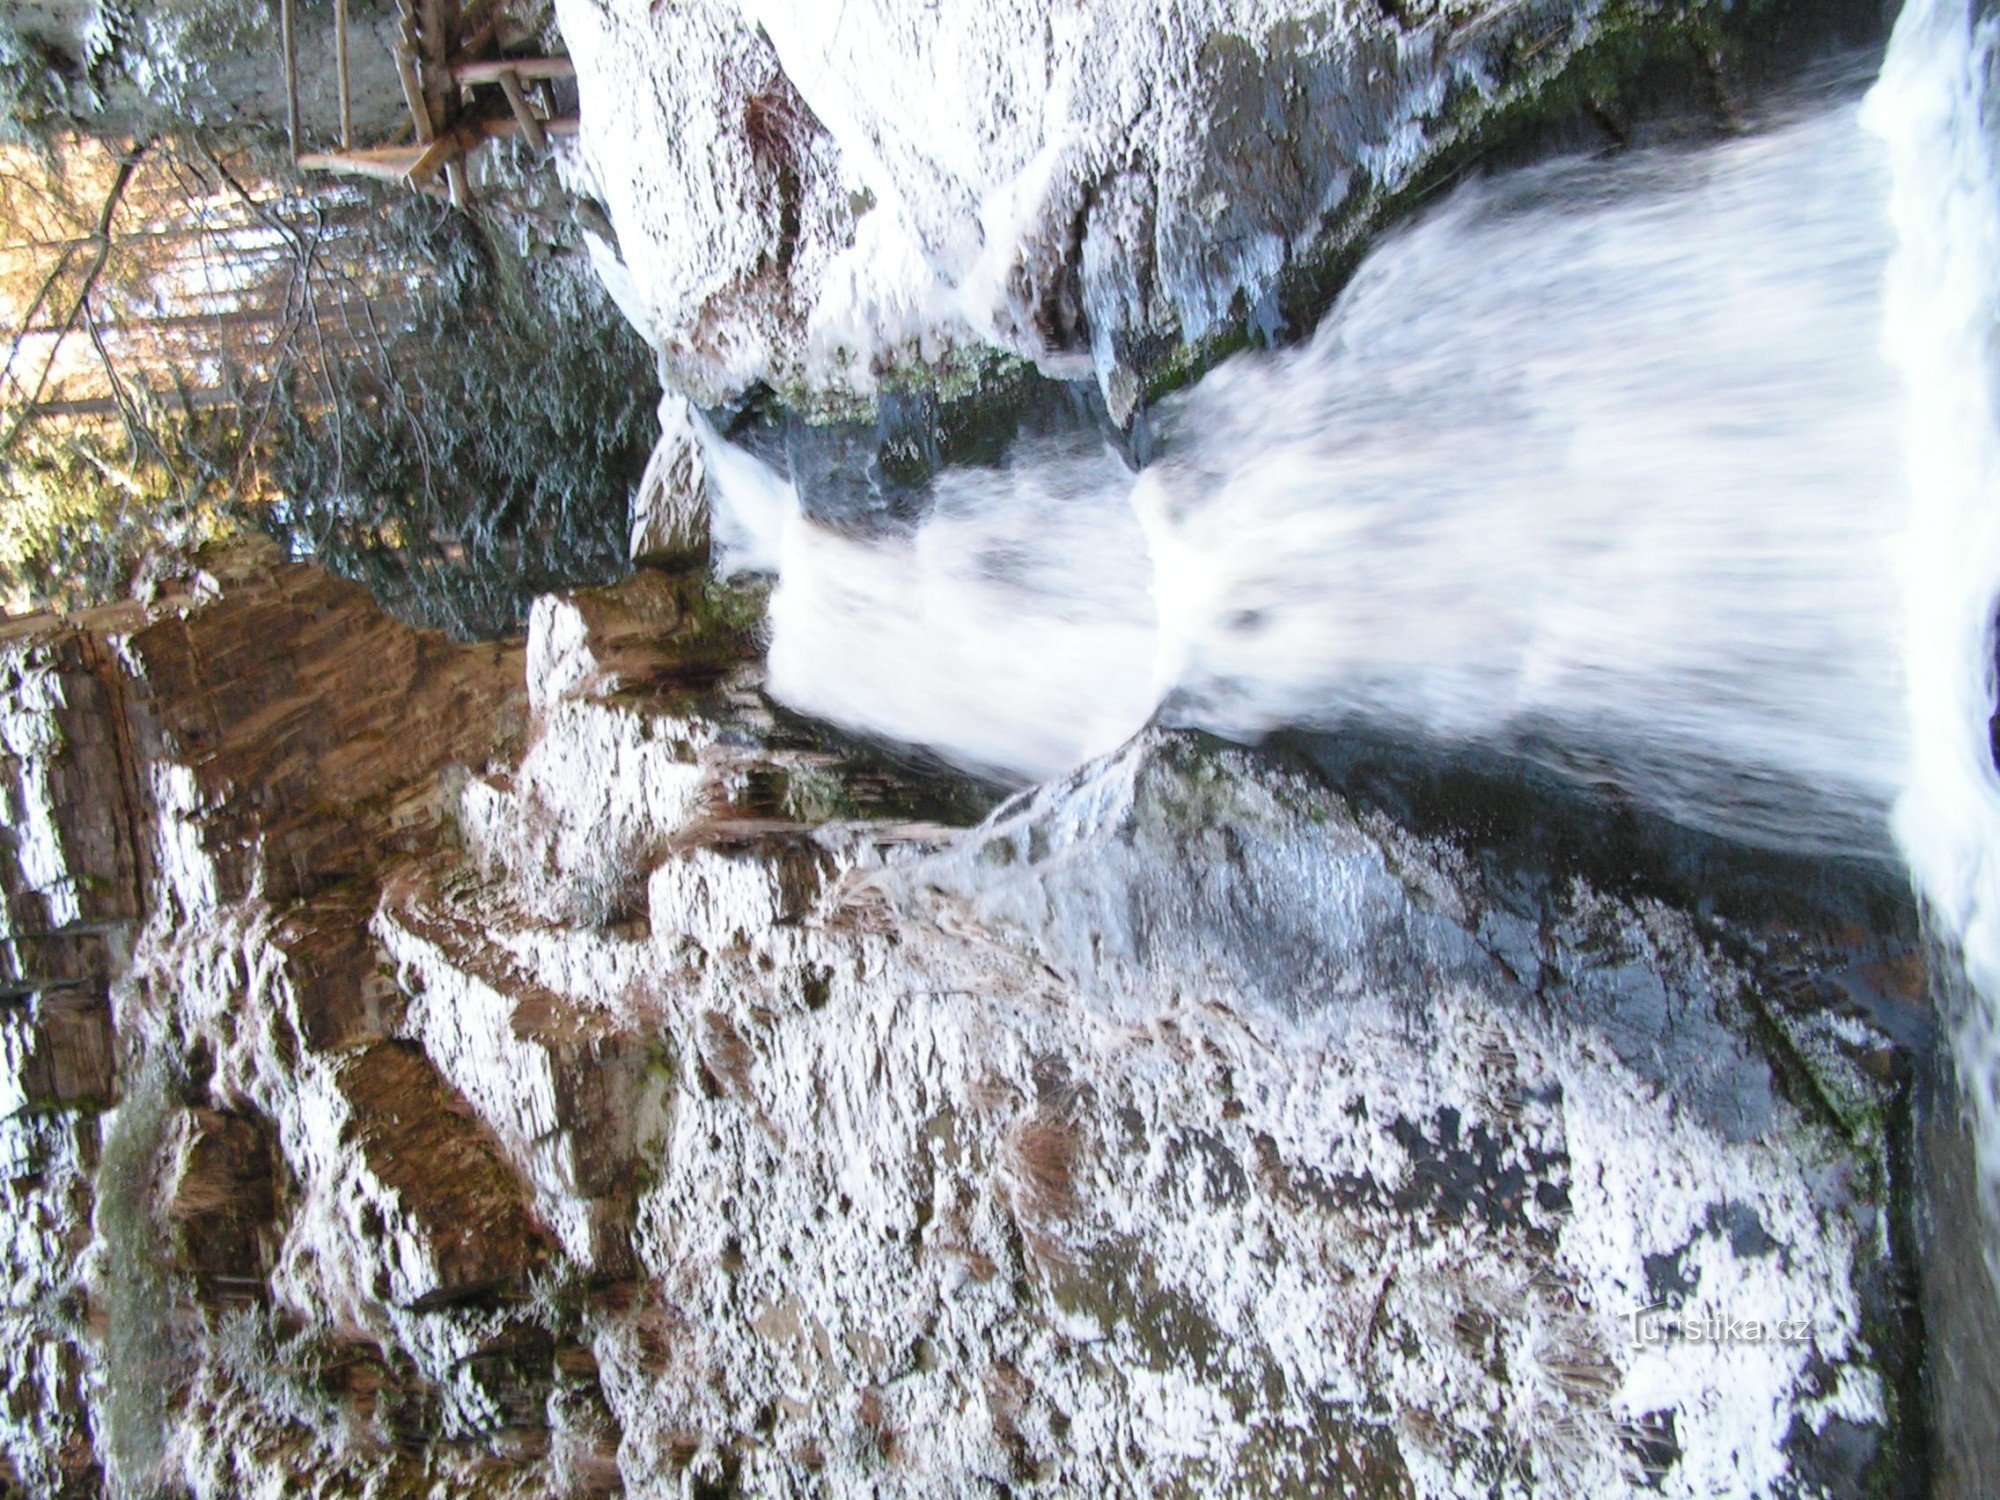 Rešov waterfalls